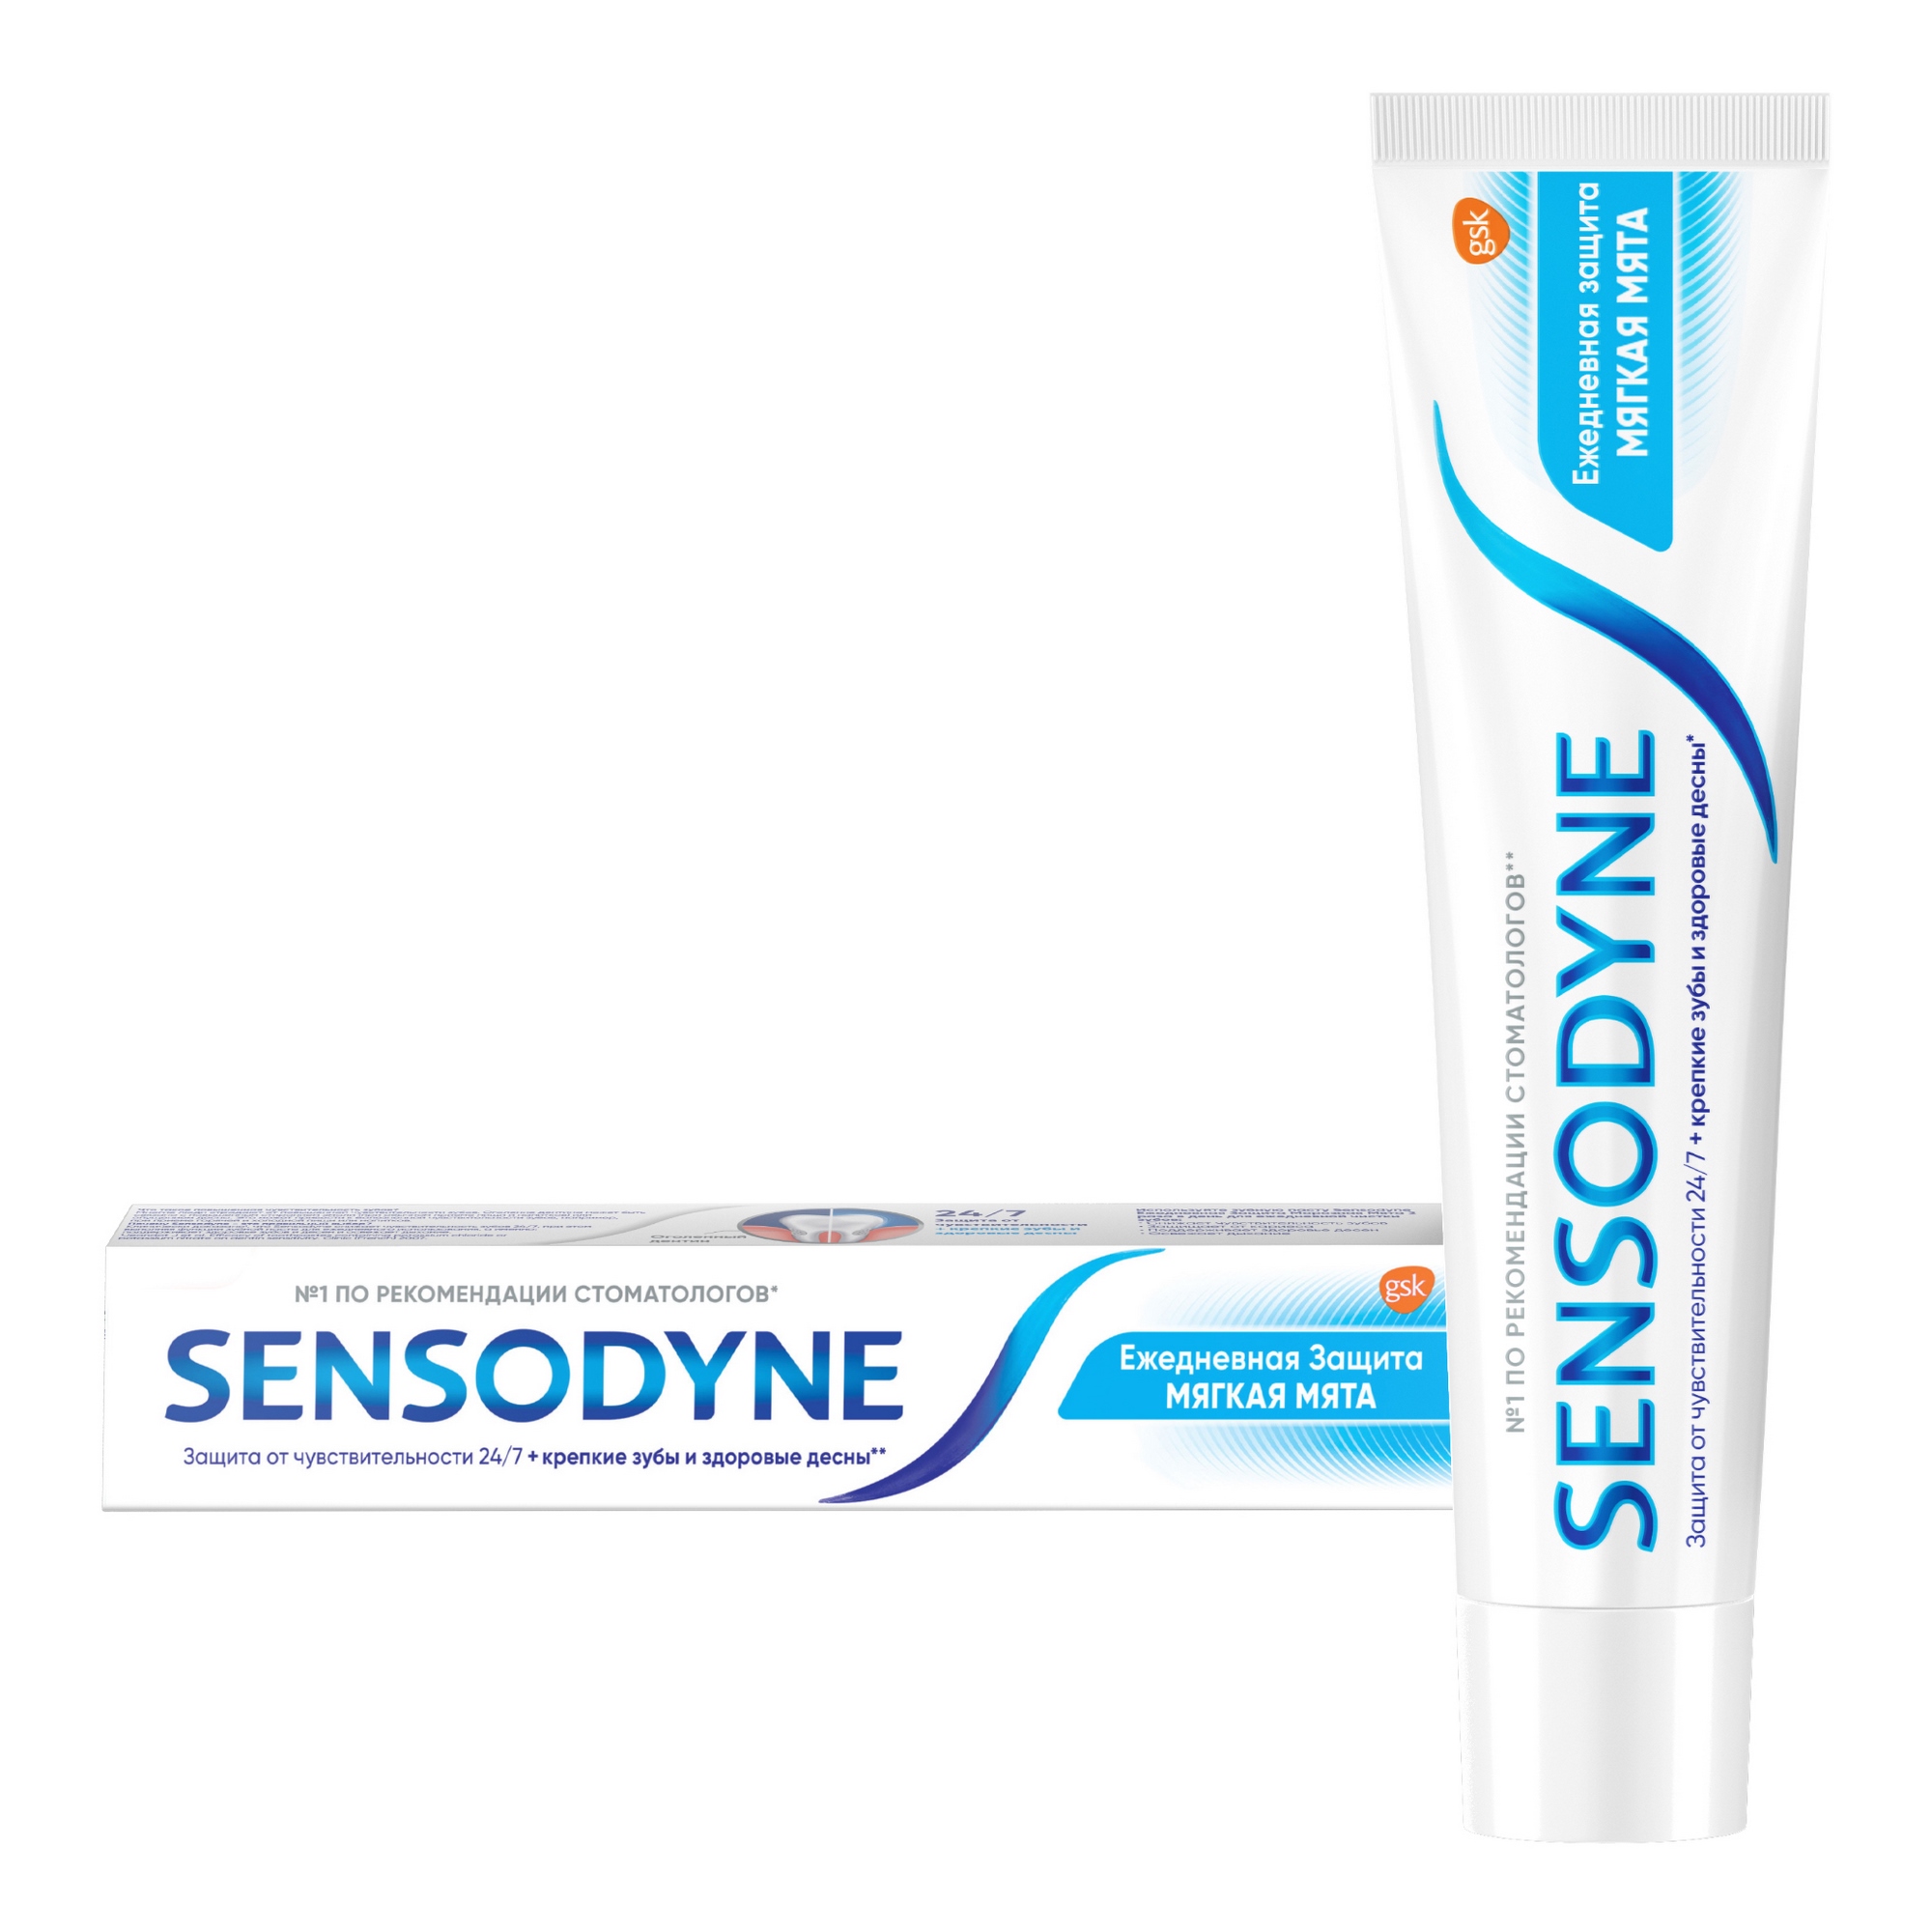 Зубная паста Sensodyne Ежедневная защита Мягкаямята 65 г зубная паста sensodyne восстановление и защита 75мл p70618 pns7061800